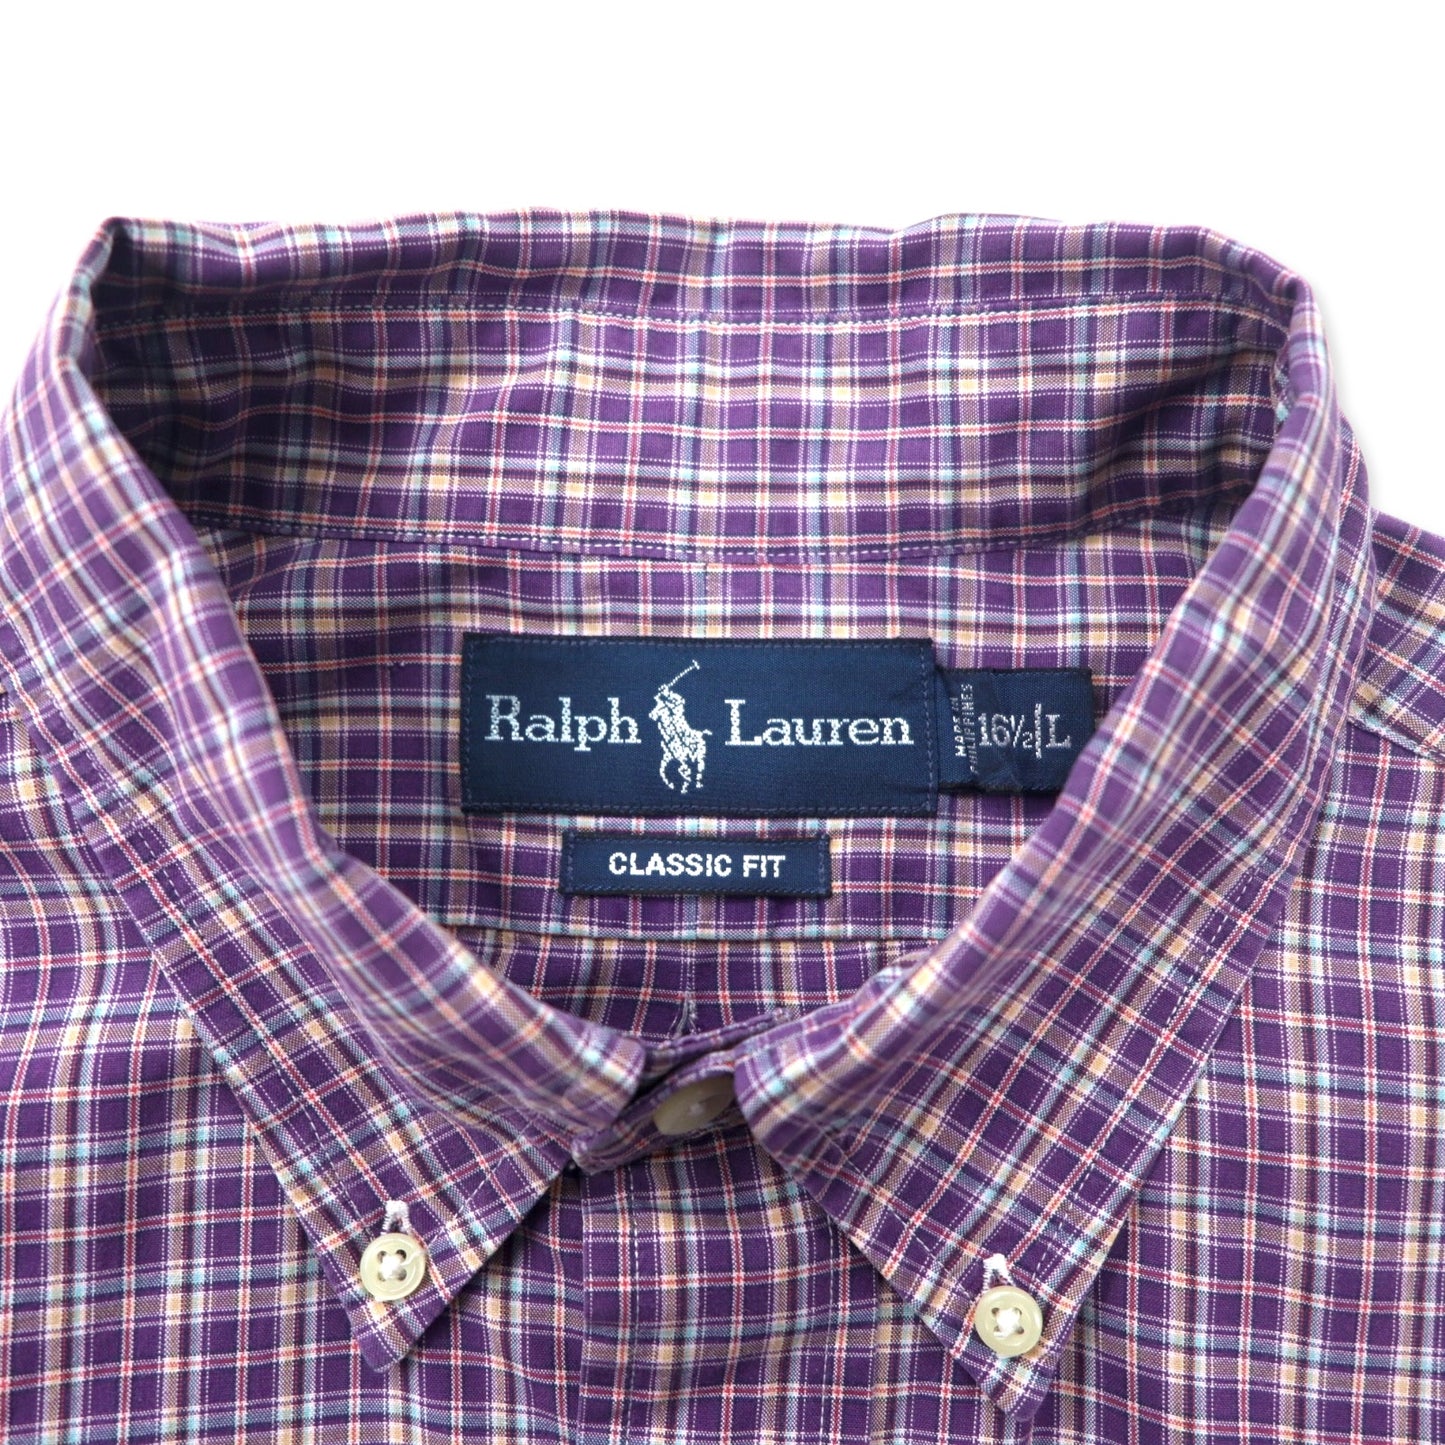 RALPH LAUREN ボタンダウンシャツ L パープル チェック コットン CUSTOM FIT スモールポニー刺繍